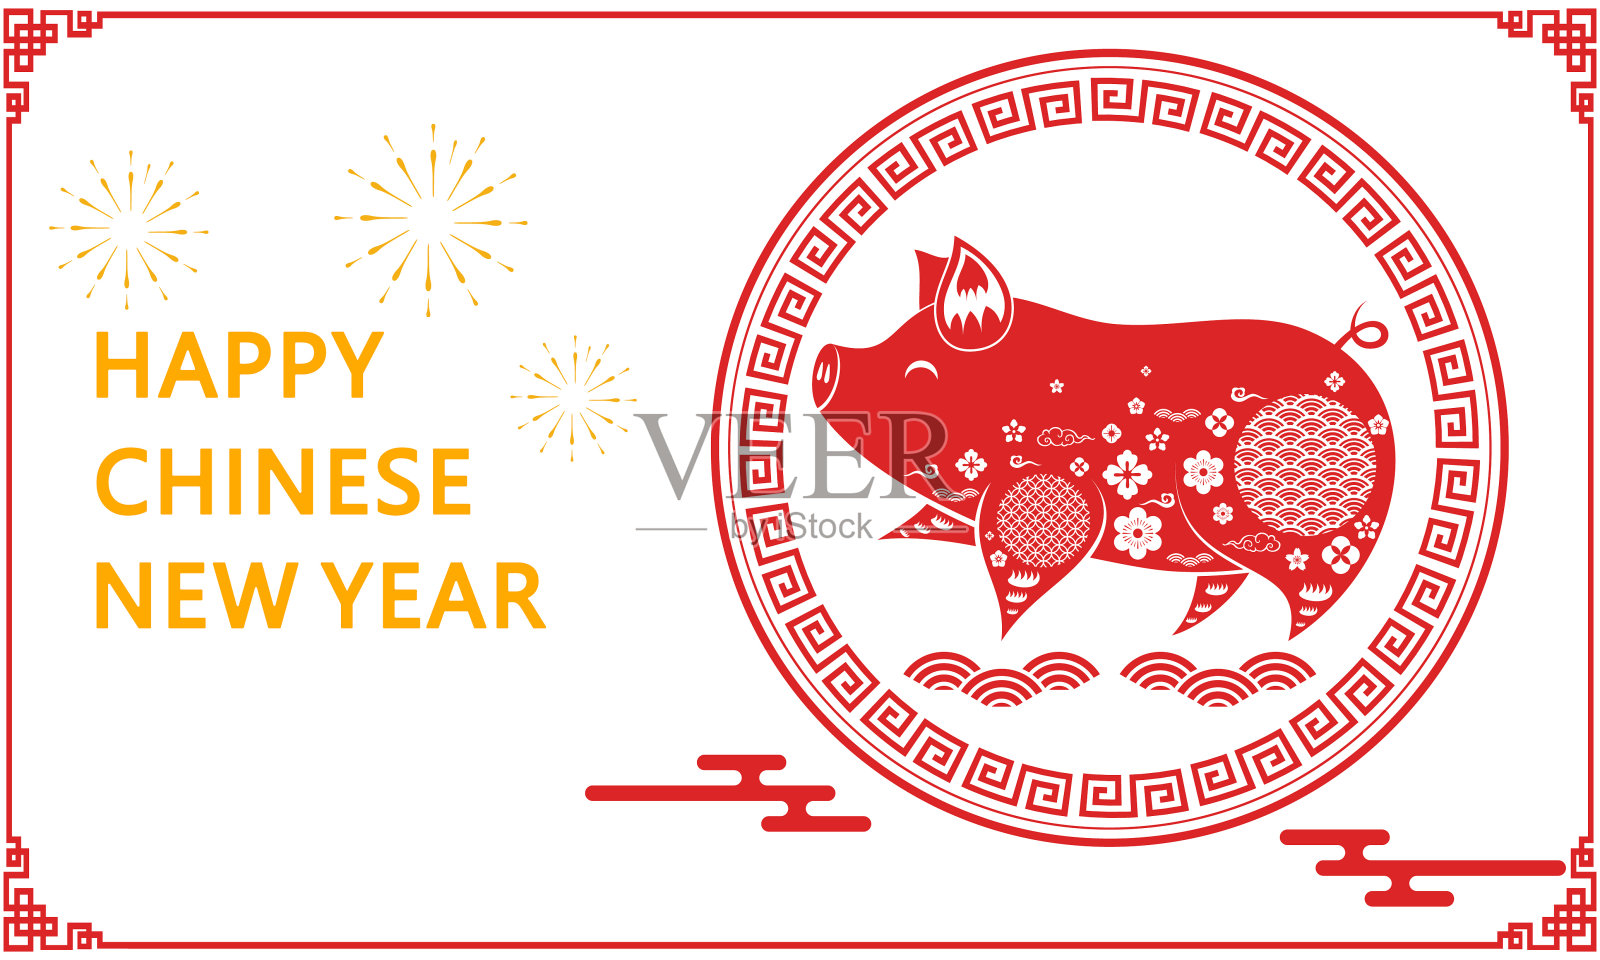 祝猪年快乐，中国传统节日春节快乐，插画图片素材